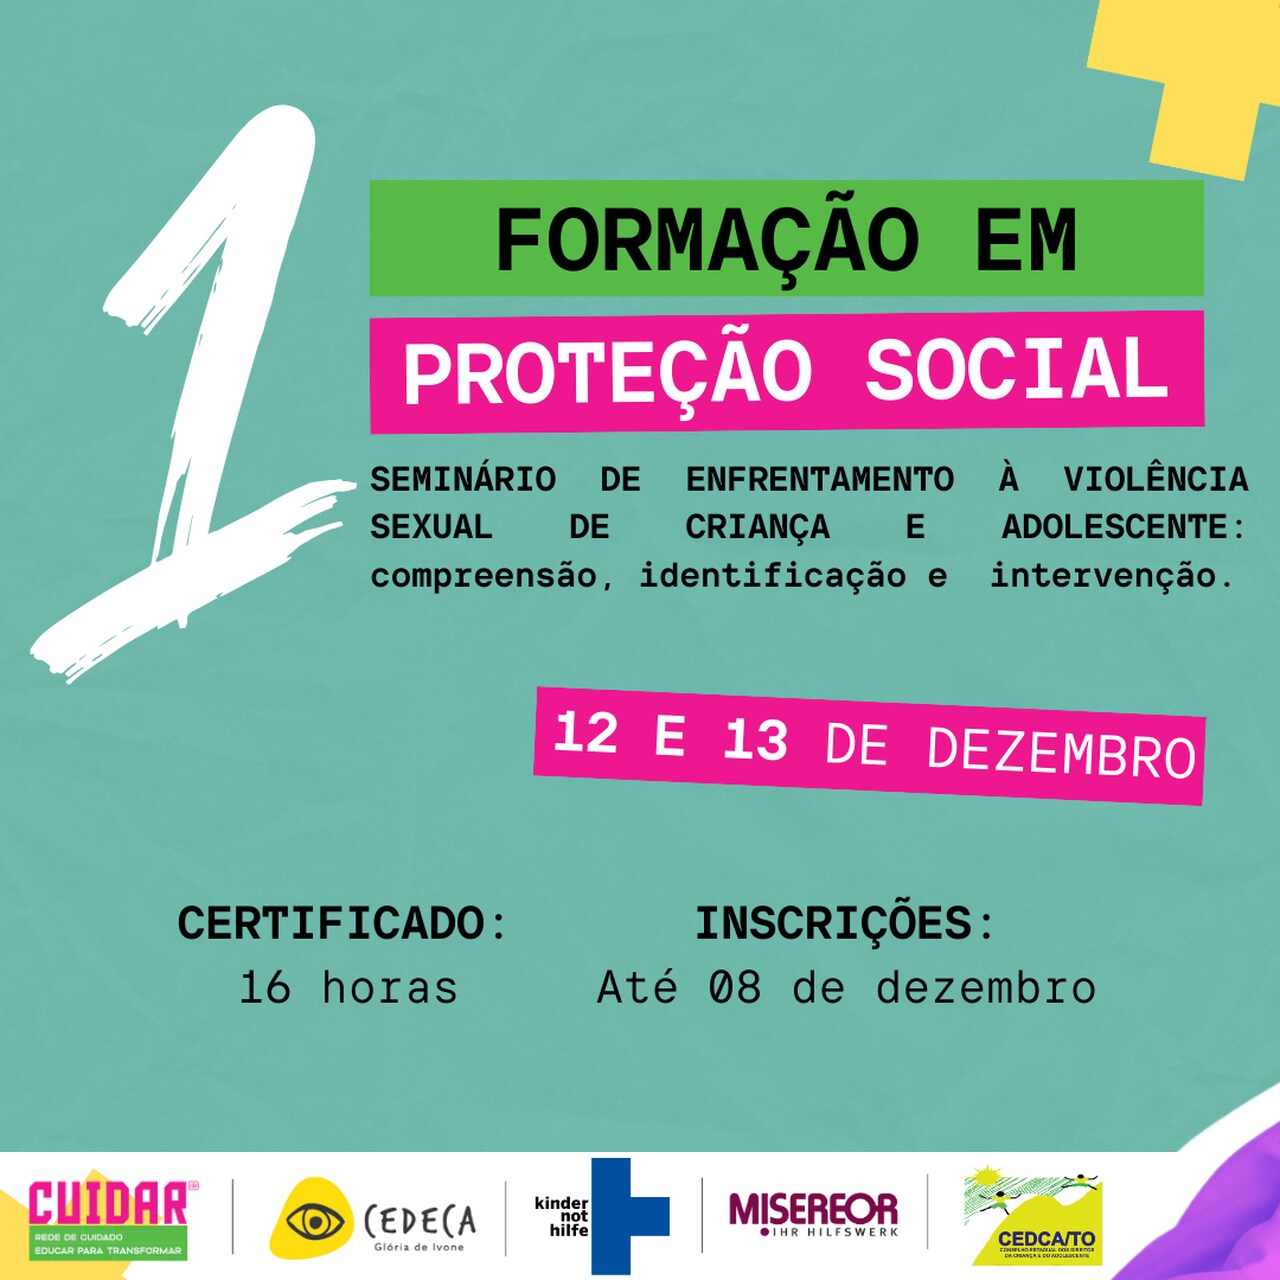 Seminário de enfrentamento à violência sexual de crianças e adolescentes acontecerá em Palmas, nos dias 12 e 13 de dezembro